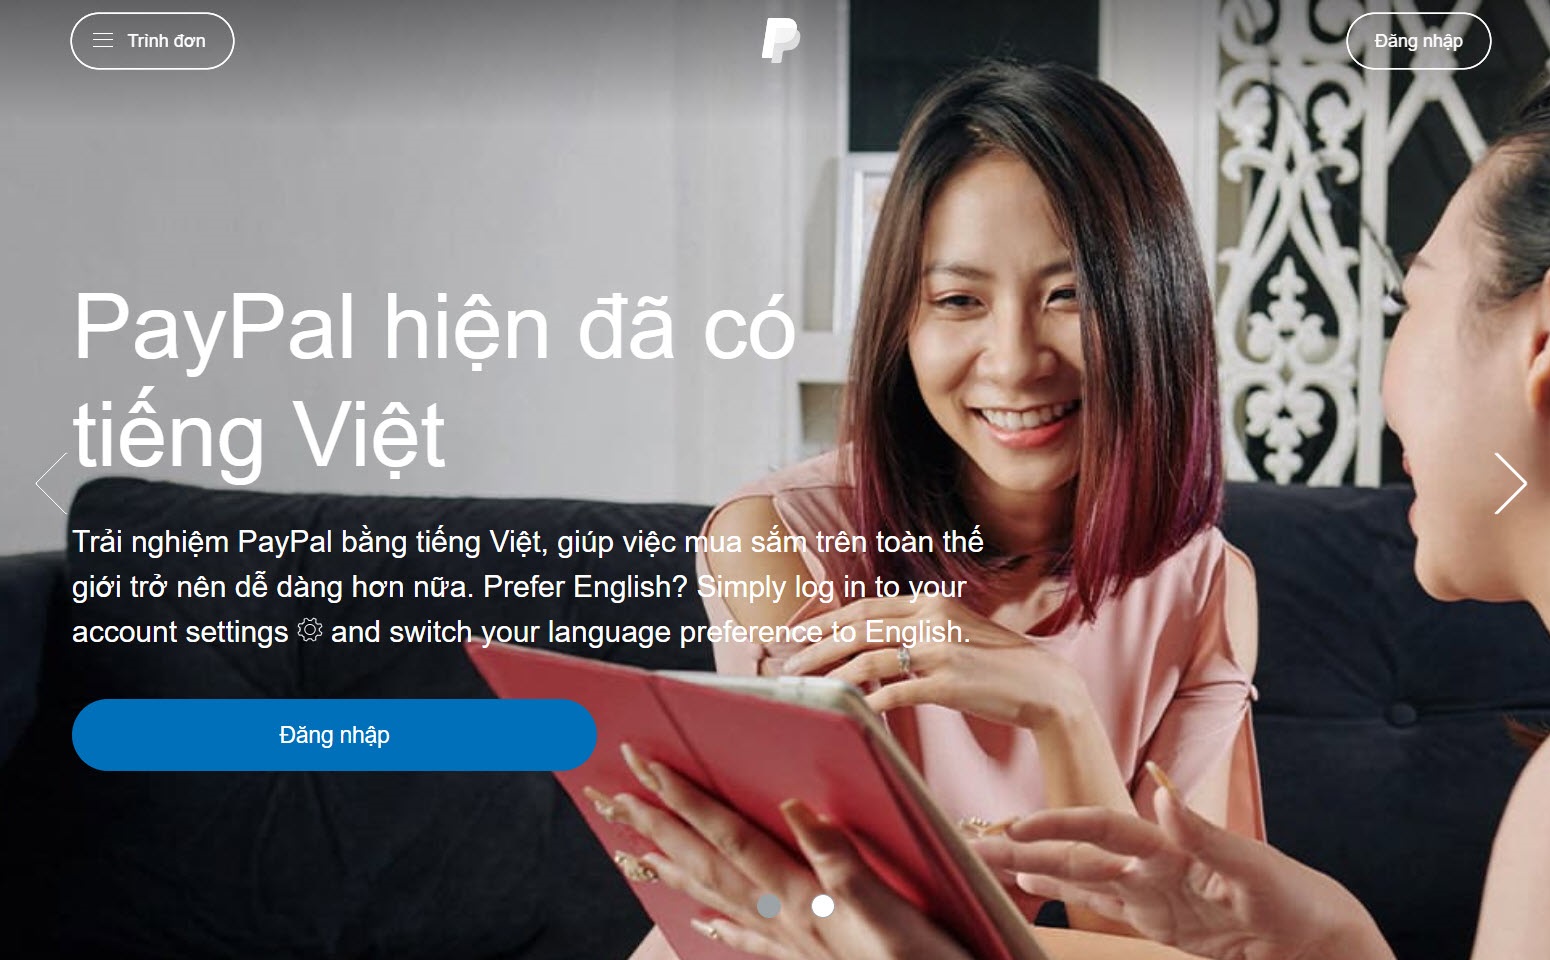 Hướng dẫn tạo tài khoản Paypal miễn phí, giao diện tiếng Việt chính chủ